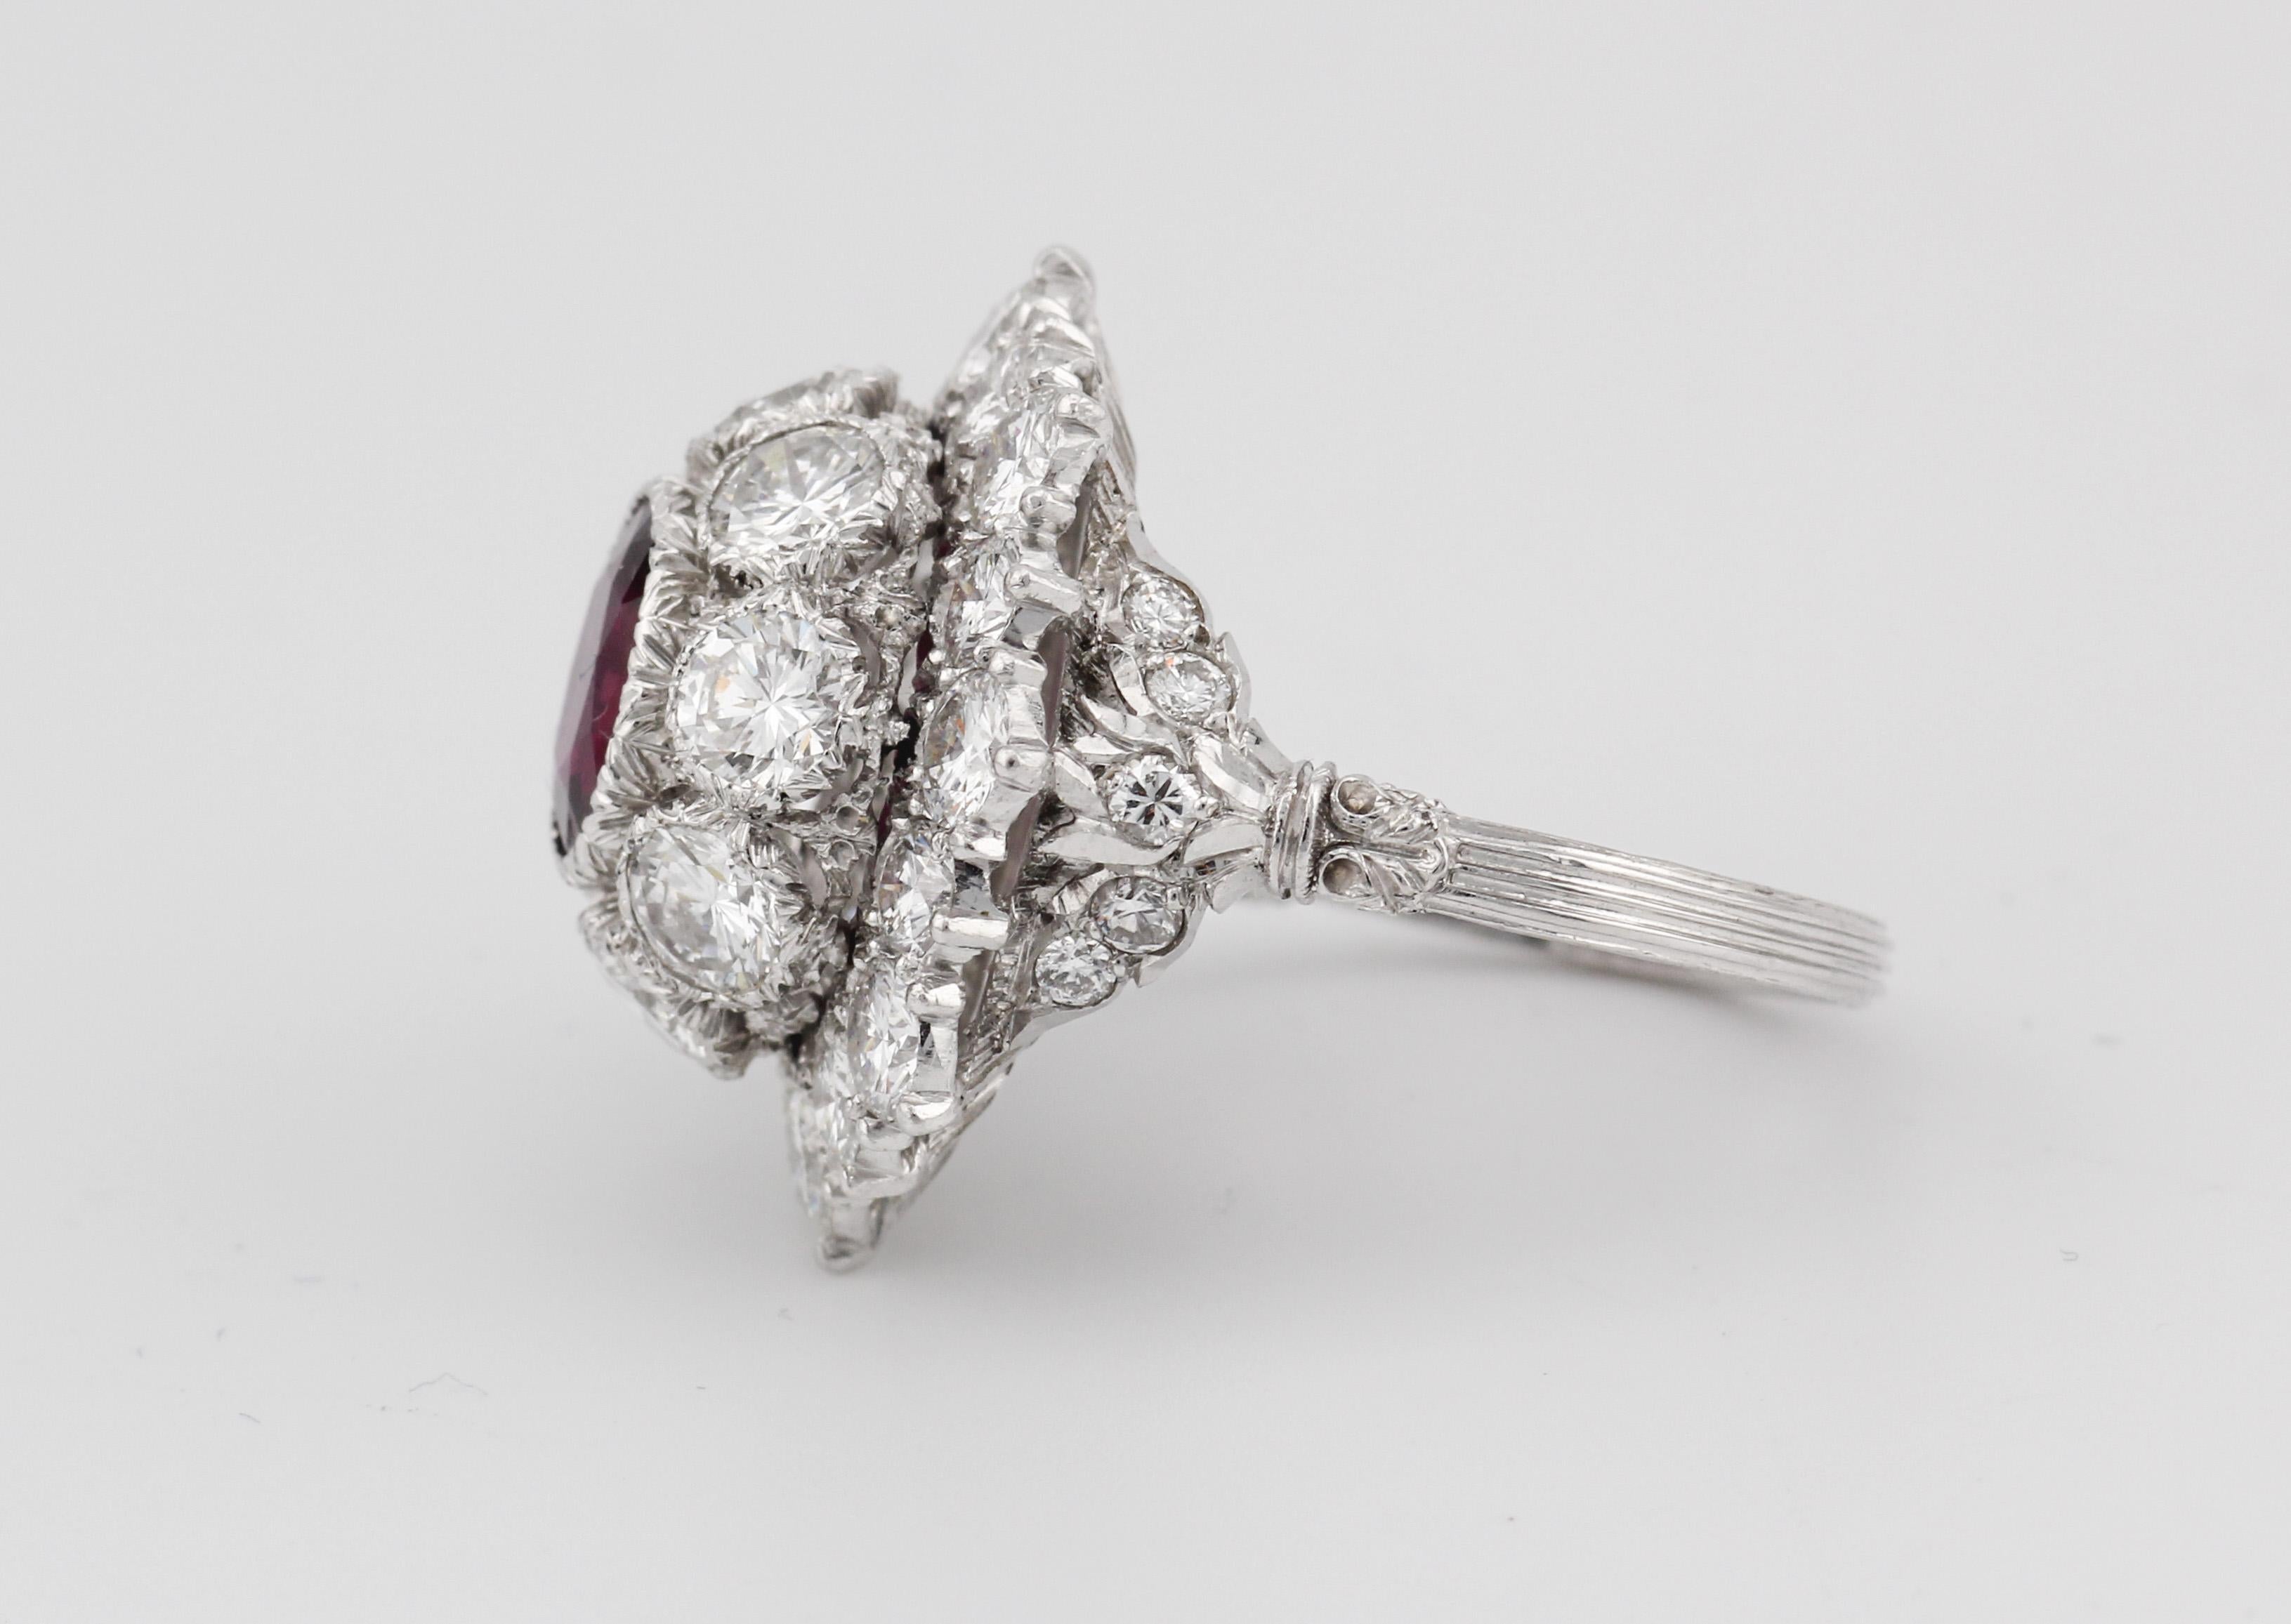 Der mit viel Liebe zum Detail gefertigte Vintage Buccellati 1,5 Karat No Heat Thai-Rubin-Diamant-Platinring ist ein Beweis für zeitlose Eleganz und unvergleichliche Handwerkskunst. In einer glänzenden Platinfassung präsentiert dieses bezaubernde